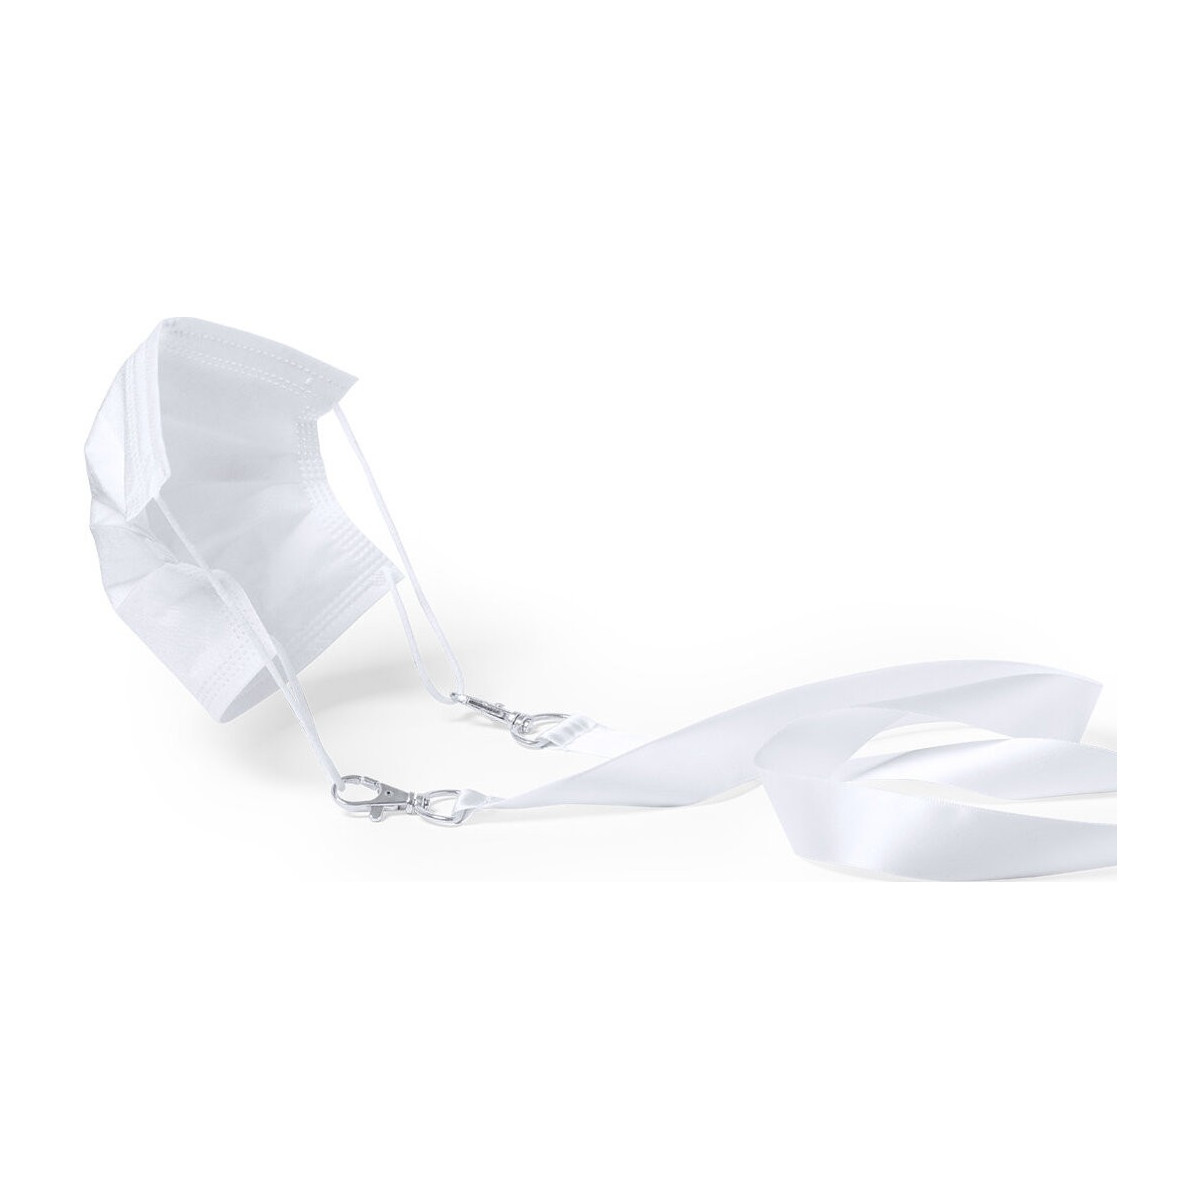 Bande de support de masque en polyester blanc